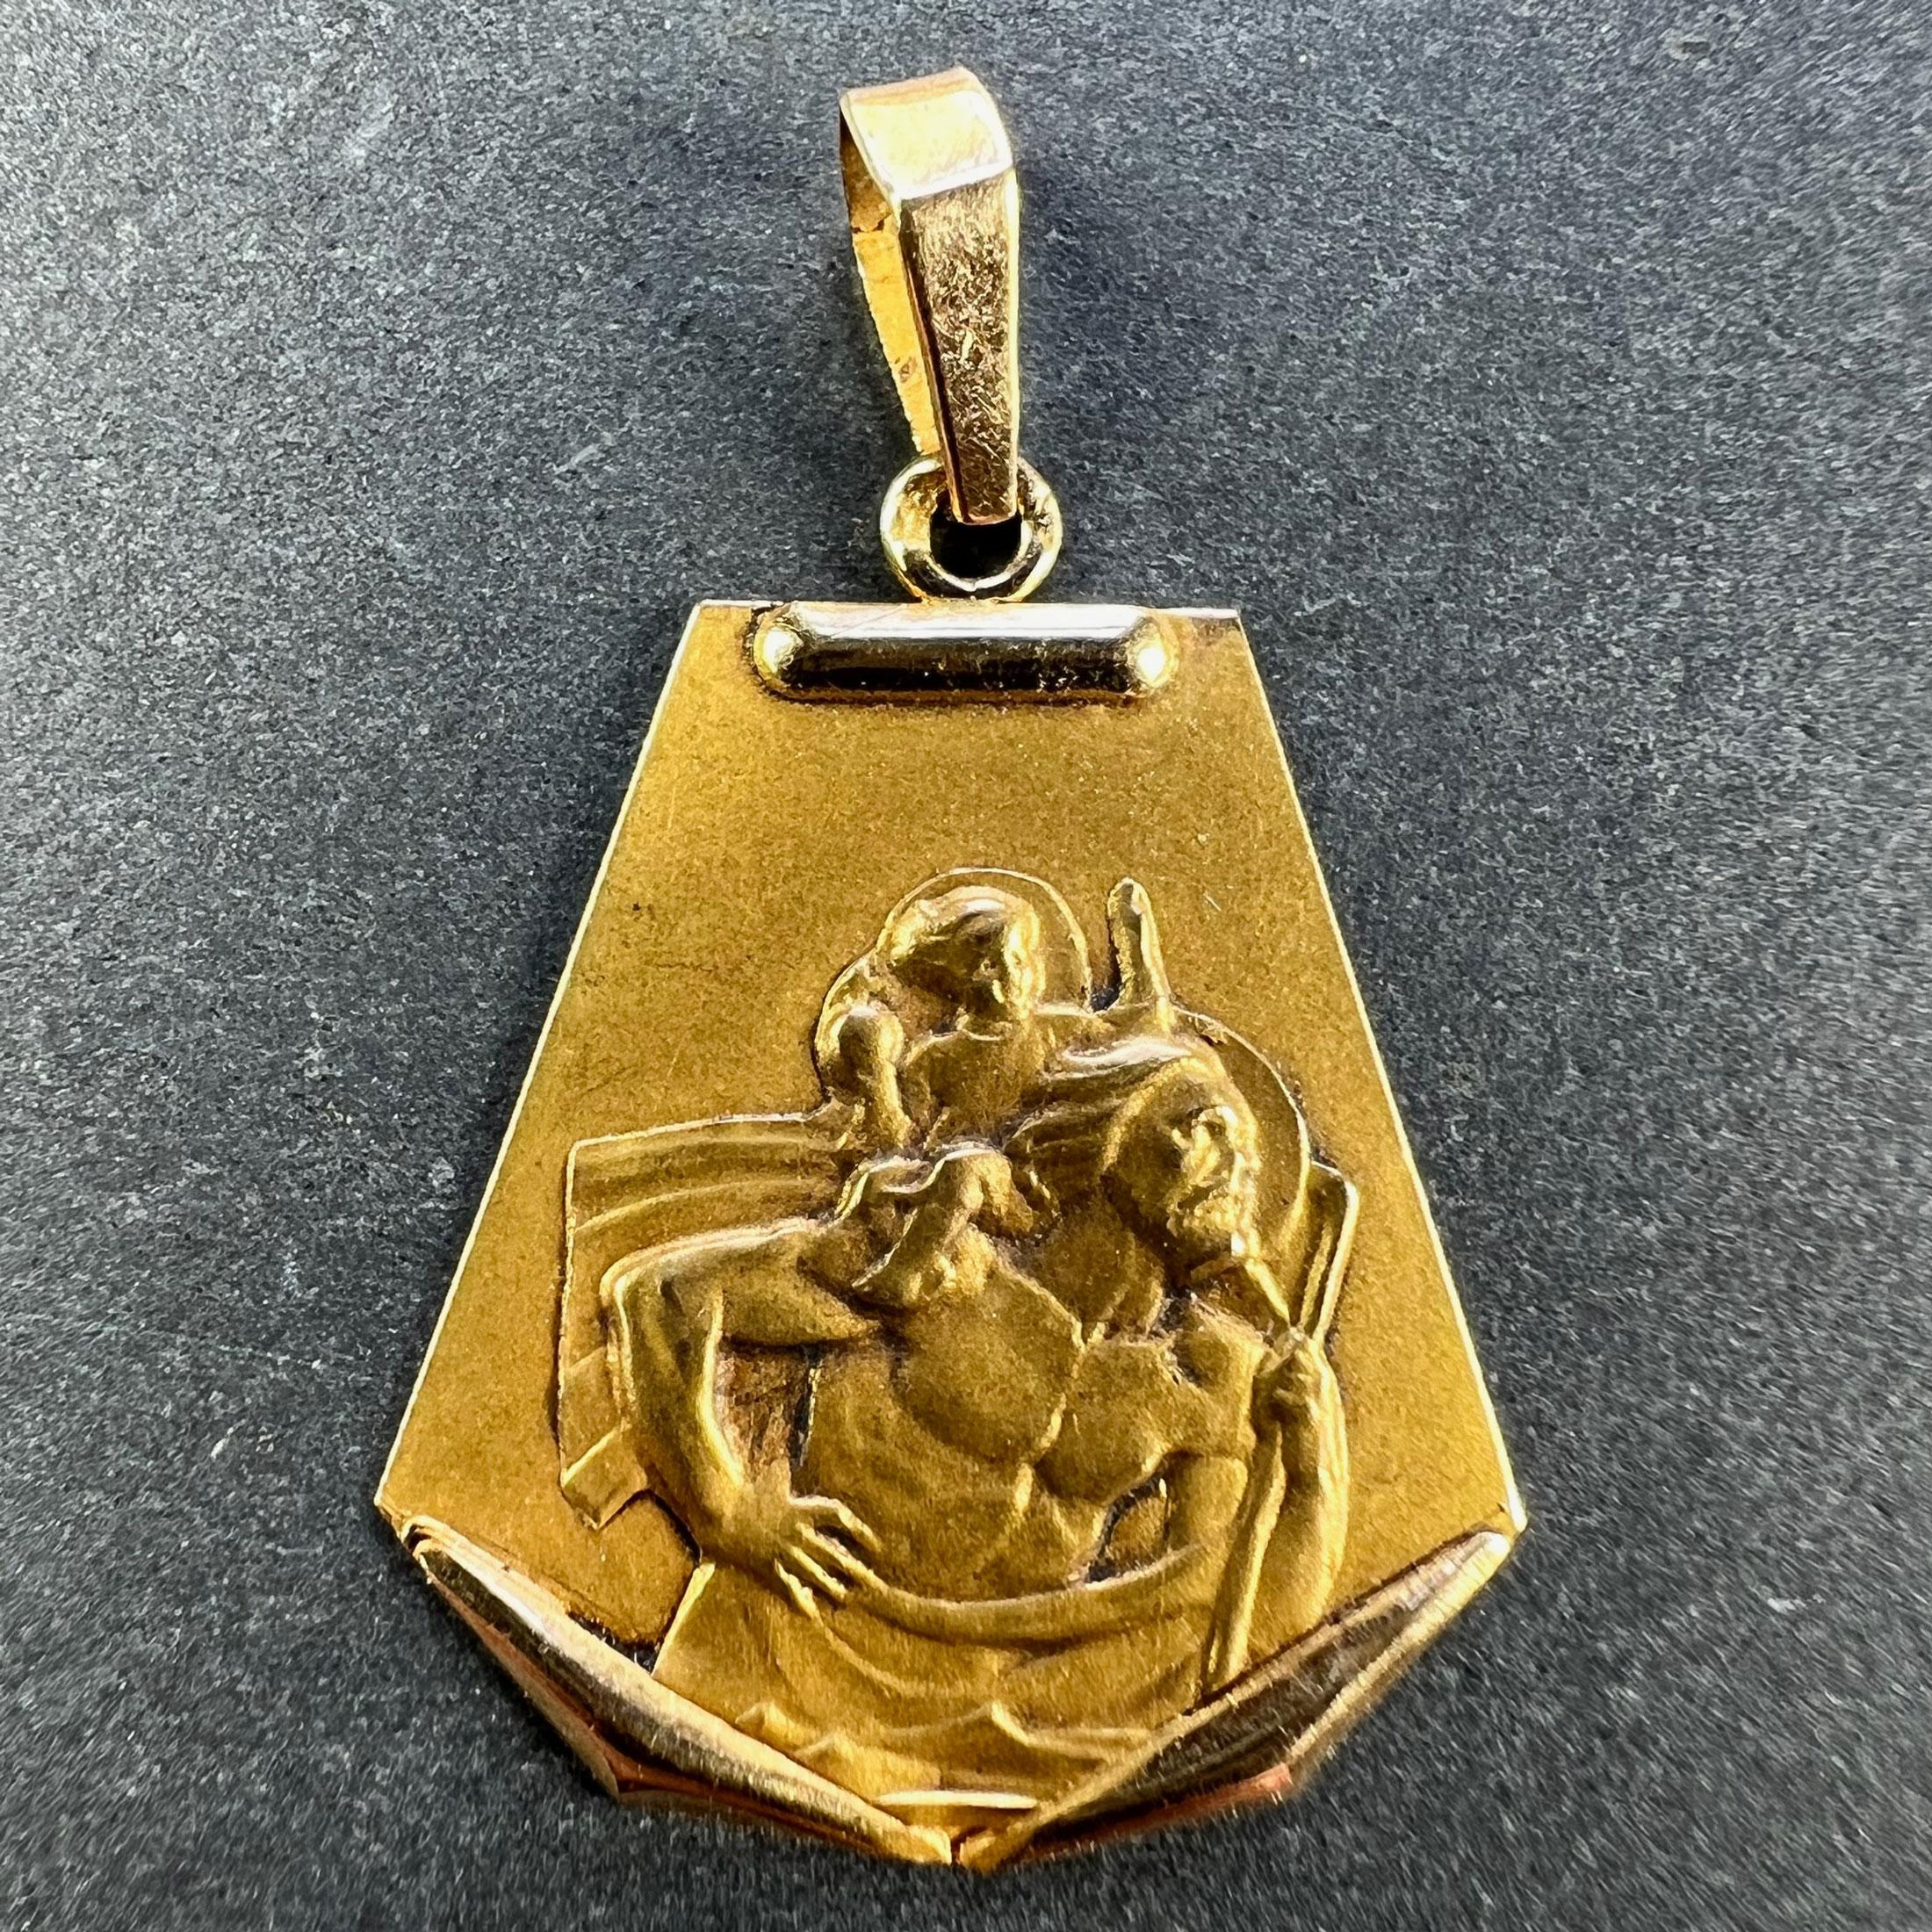 Ein Vintage Französisch 18 Karat (18K) Gelbgold Charme Anhänger oder Medaille, die St. Christophorus trägt das Kind Christus über den Fluss. Teilweise gestempelt mit dem Adlerkopf für französische Herstellung.

Abmessungen: 2,4 x 1,9 x 0,1 cm (ohne